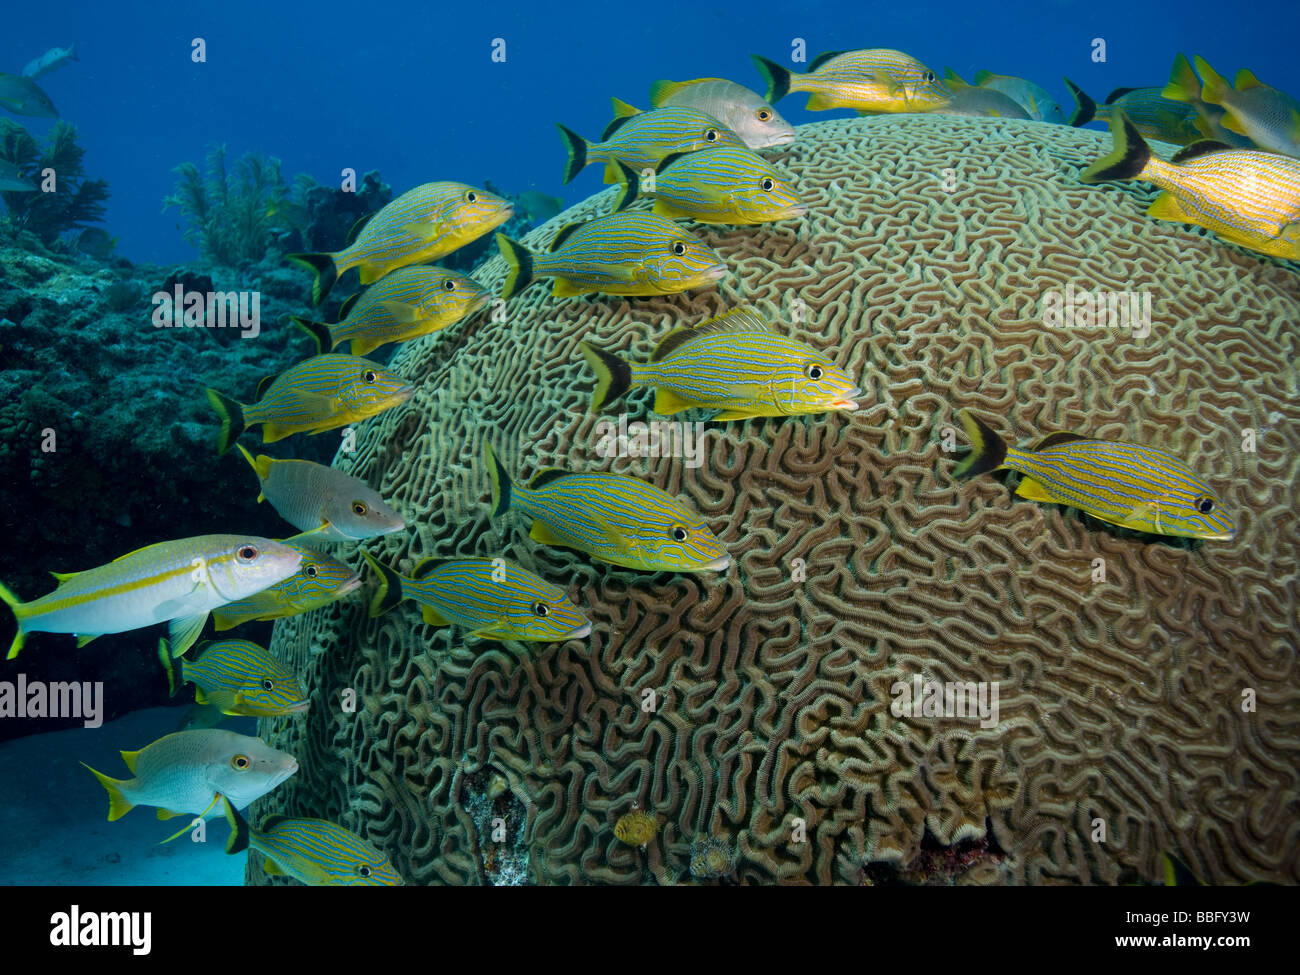 Fish huddled near brain coral. Stock Photo